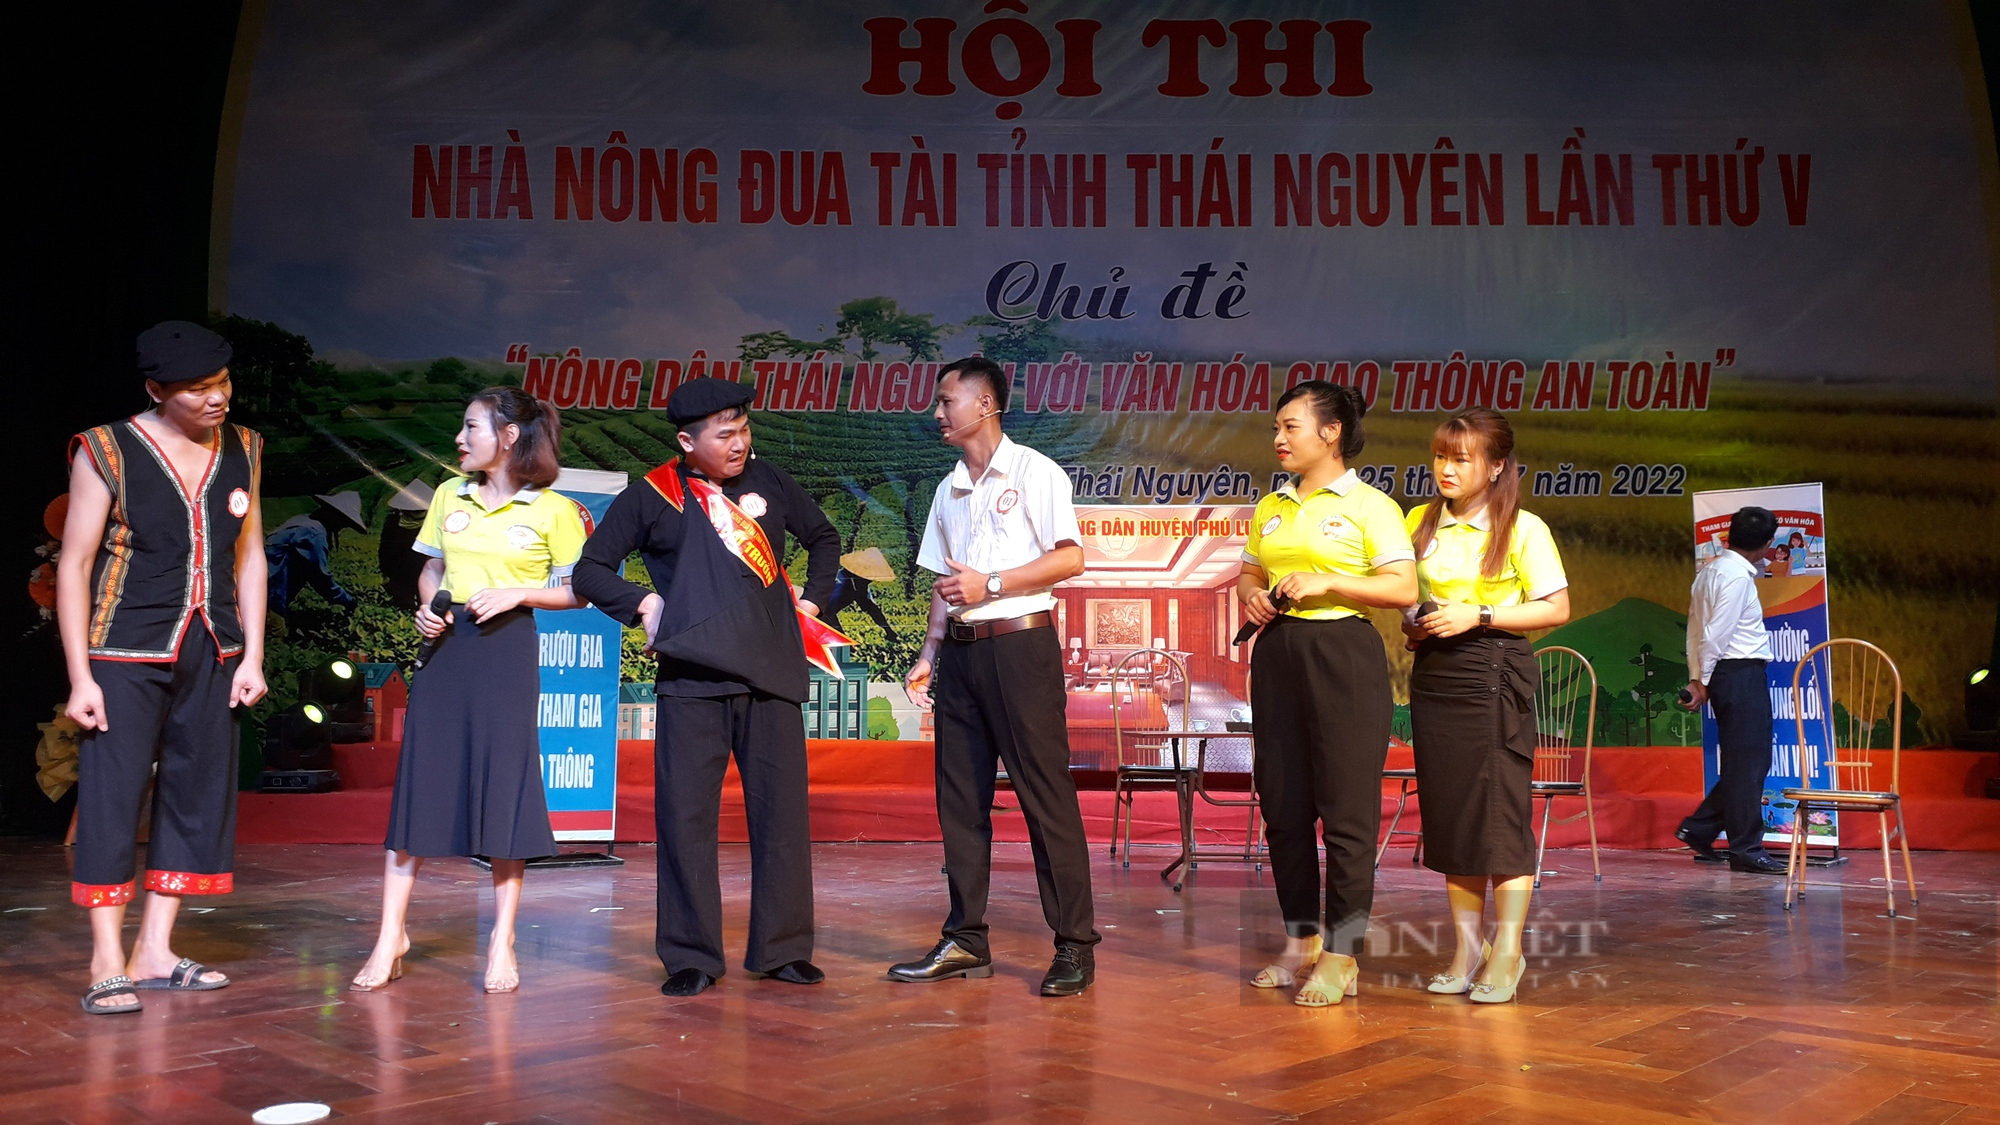 Gần 100 thí sinh đua tài tại hội thi “Nhà nông đua tài” lần thứ V tỉnh Thái Nguyên - Ảnh 1.